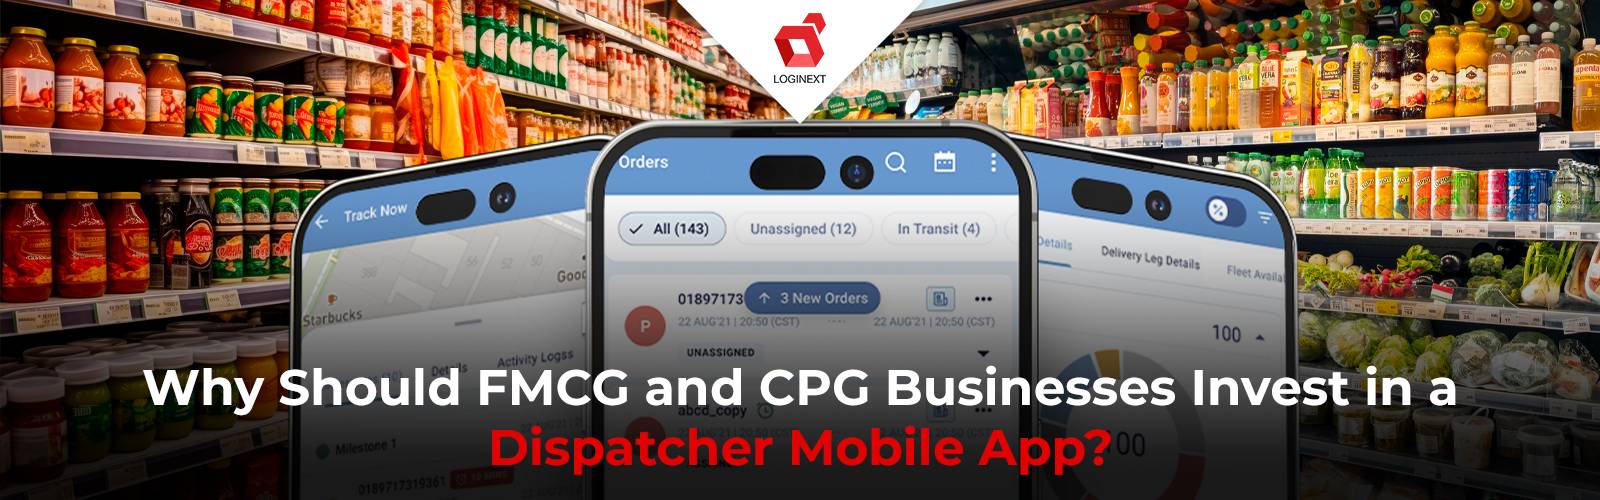 ¿Por qué las empresas de CPG y FMCG deberían invertir en una aplicación móvil para despachadores?